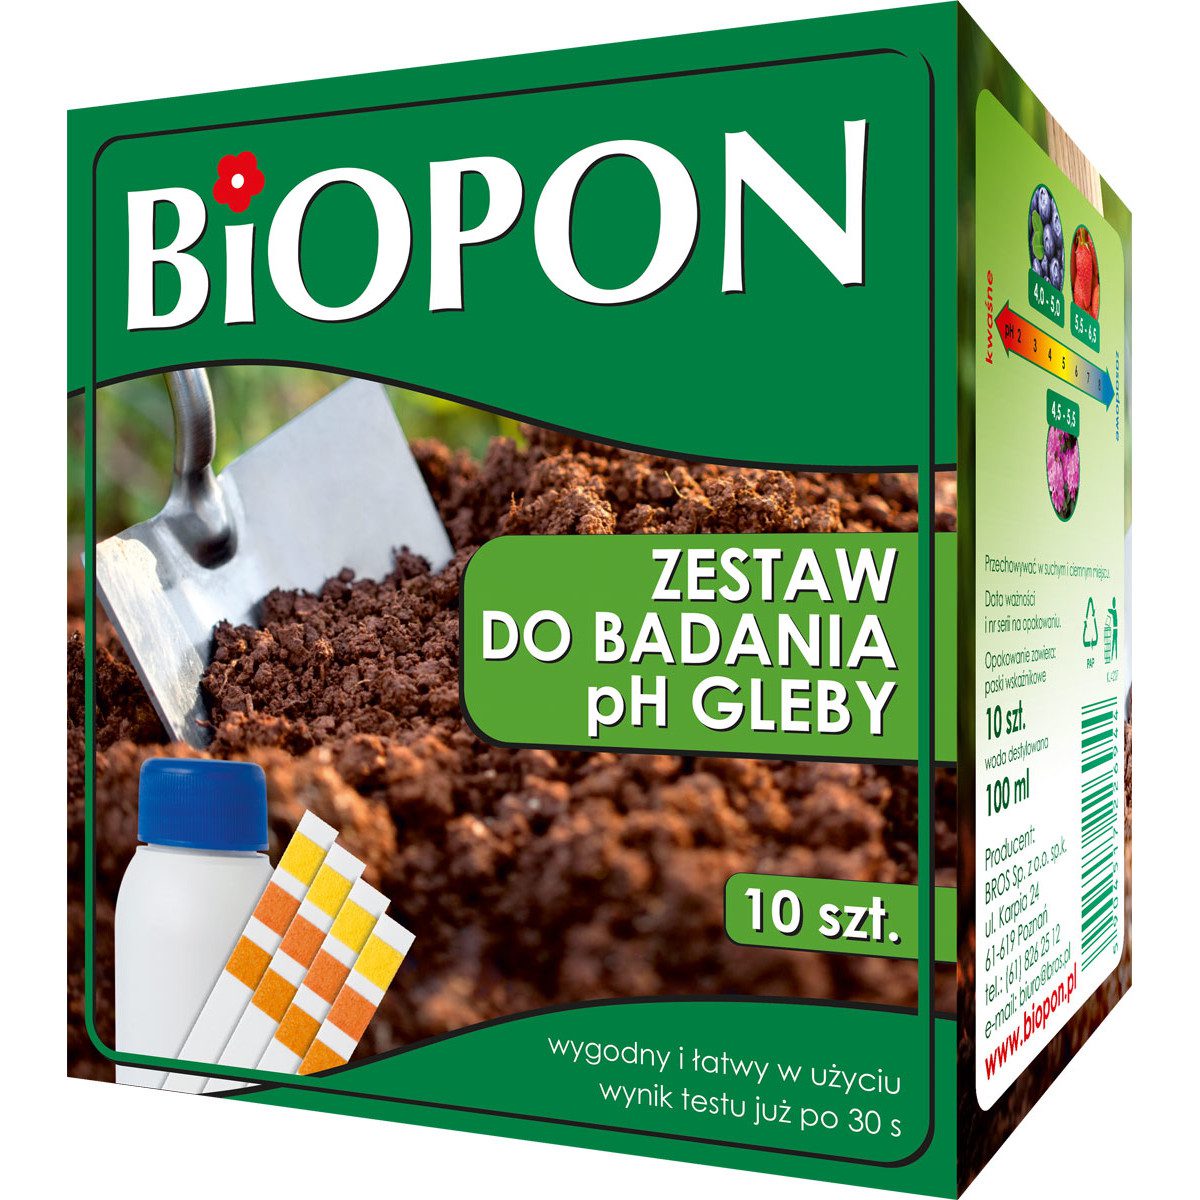 Biopon Zestaw do badania pH gleby 10 szt. + 100 ml